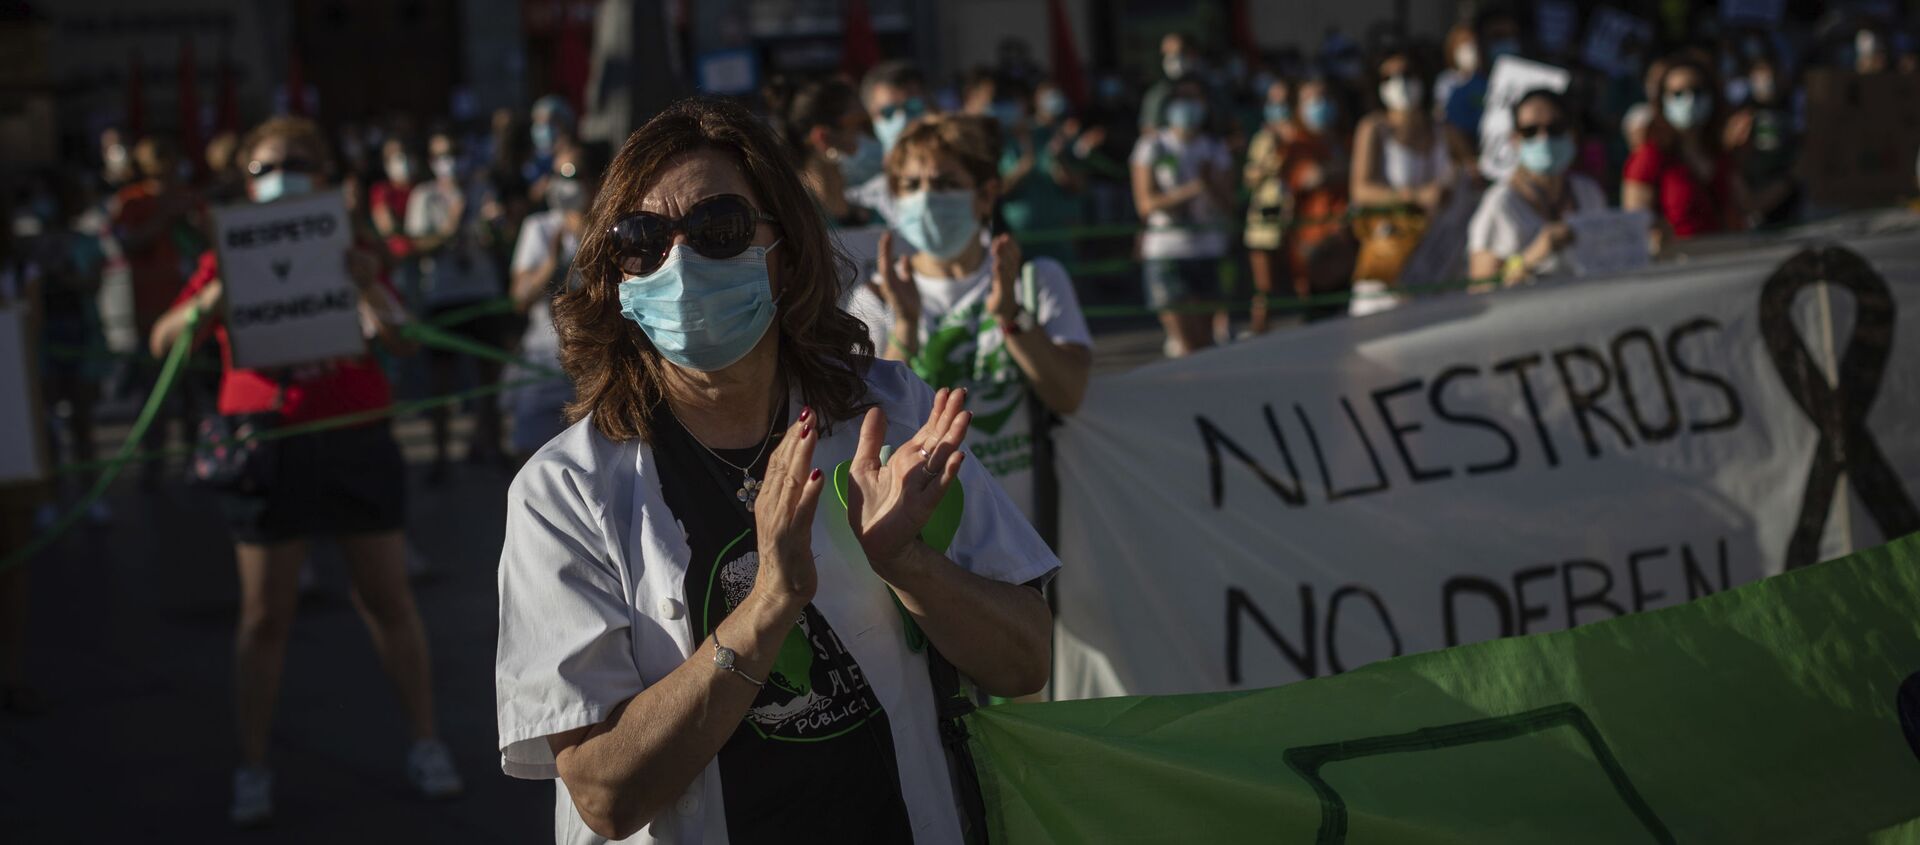 Los trabajadores sanitarios asisten a una manifestación para exigir la mejora del sistema de salud pública de España - Sputnik Mundo, 1920, 09.02.2021